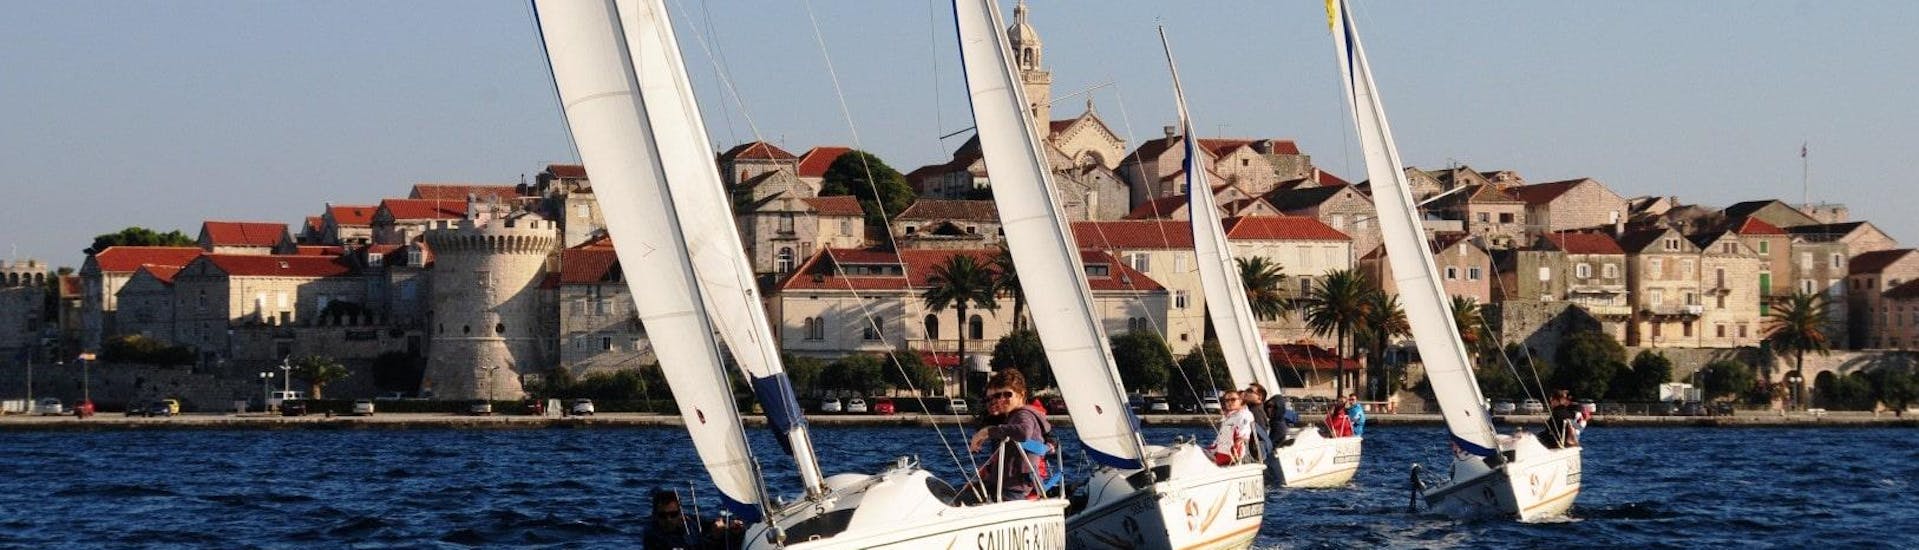 Zeilboottocht van Korčula (stad) naar Pelješac Channel met zwemmen & wild spotten.